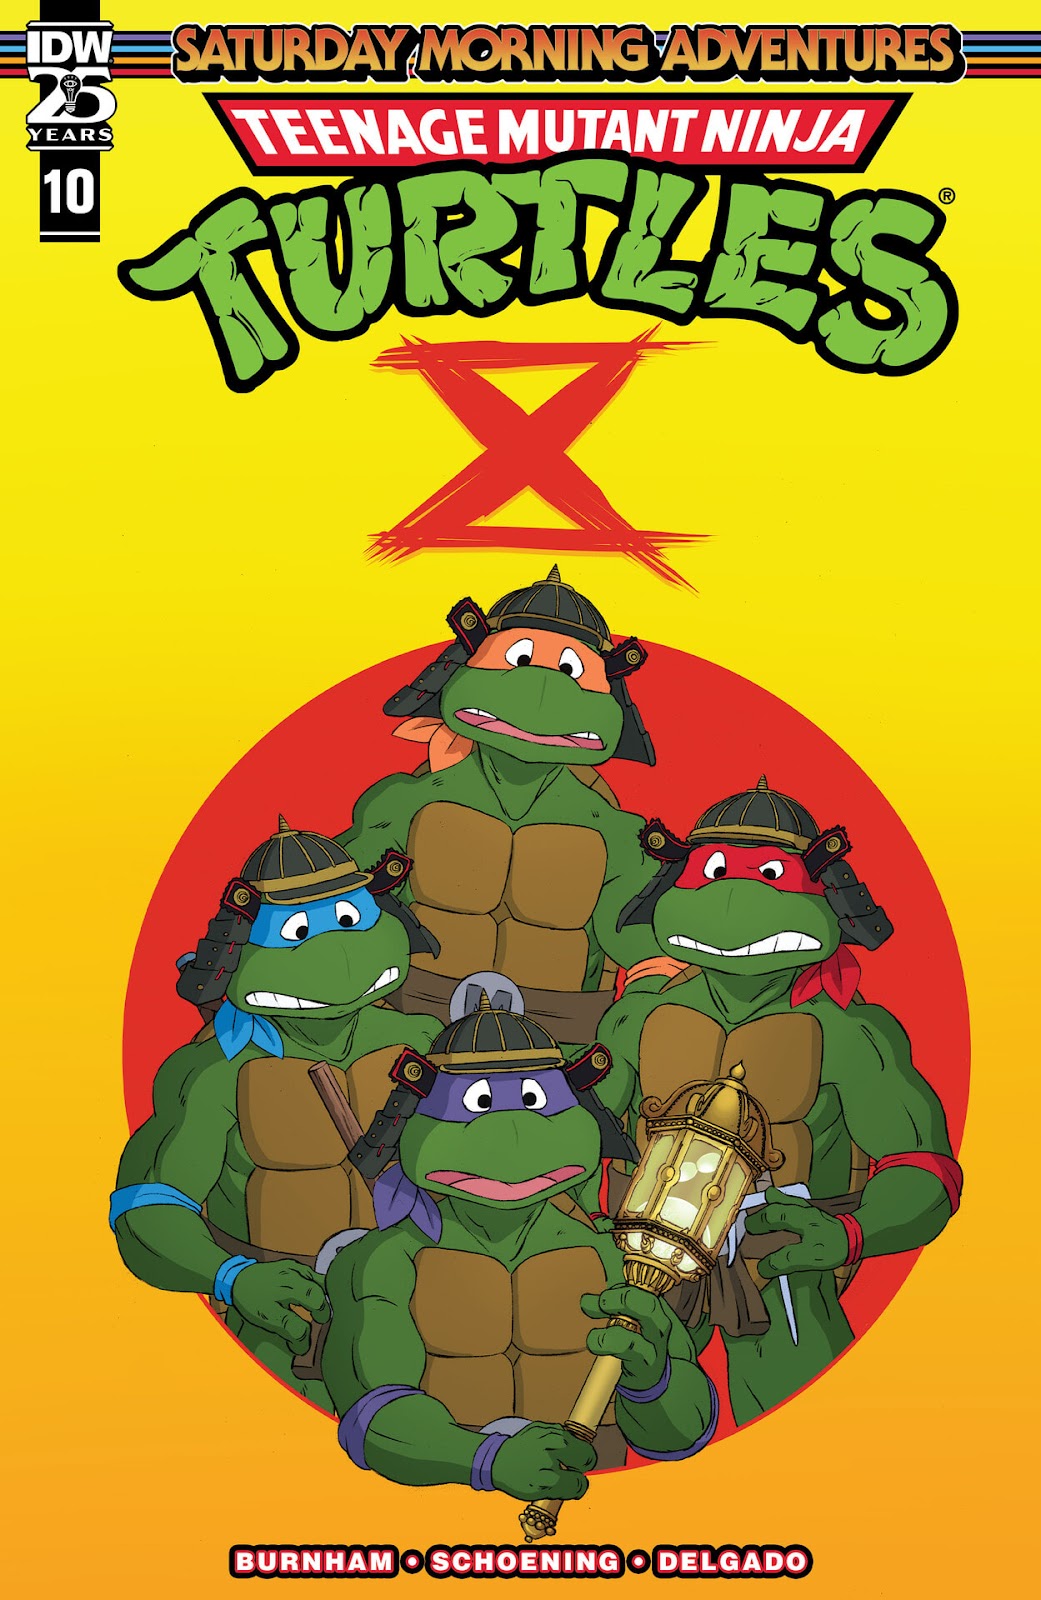 Teenage Mutant Ninja Turtles: Saturday Morning Adventures Continued issue 10 - Page 1